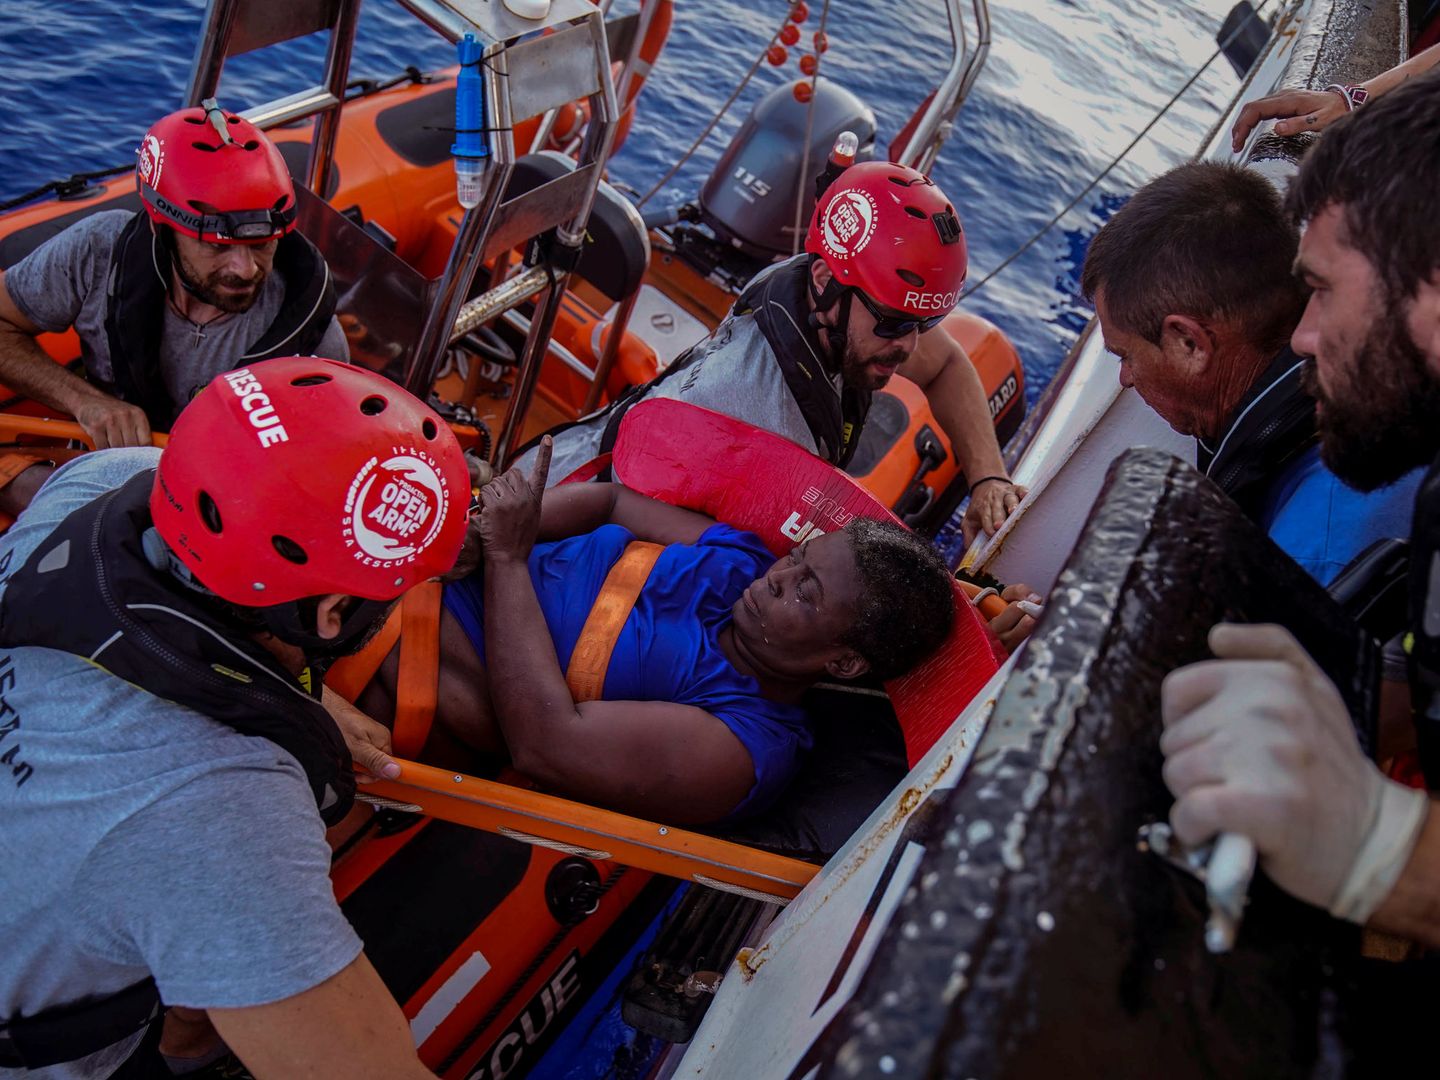 La mujer rescatada estaba en una embarcación semihundida en la que había dos cadáveres. (Reuters)